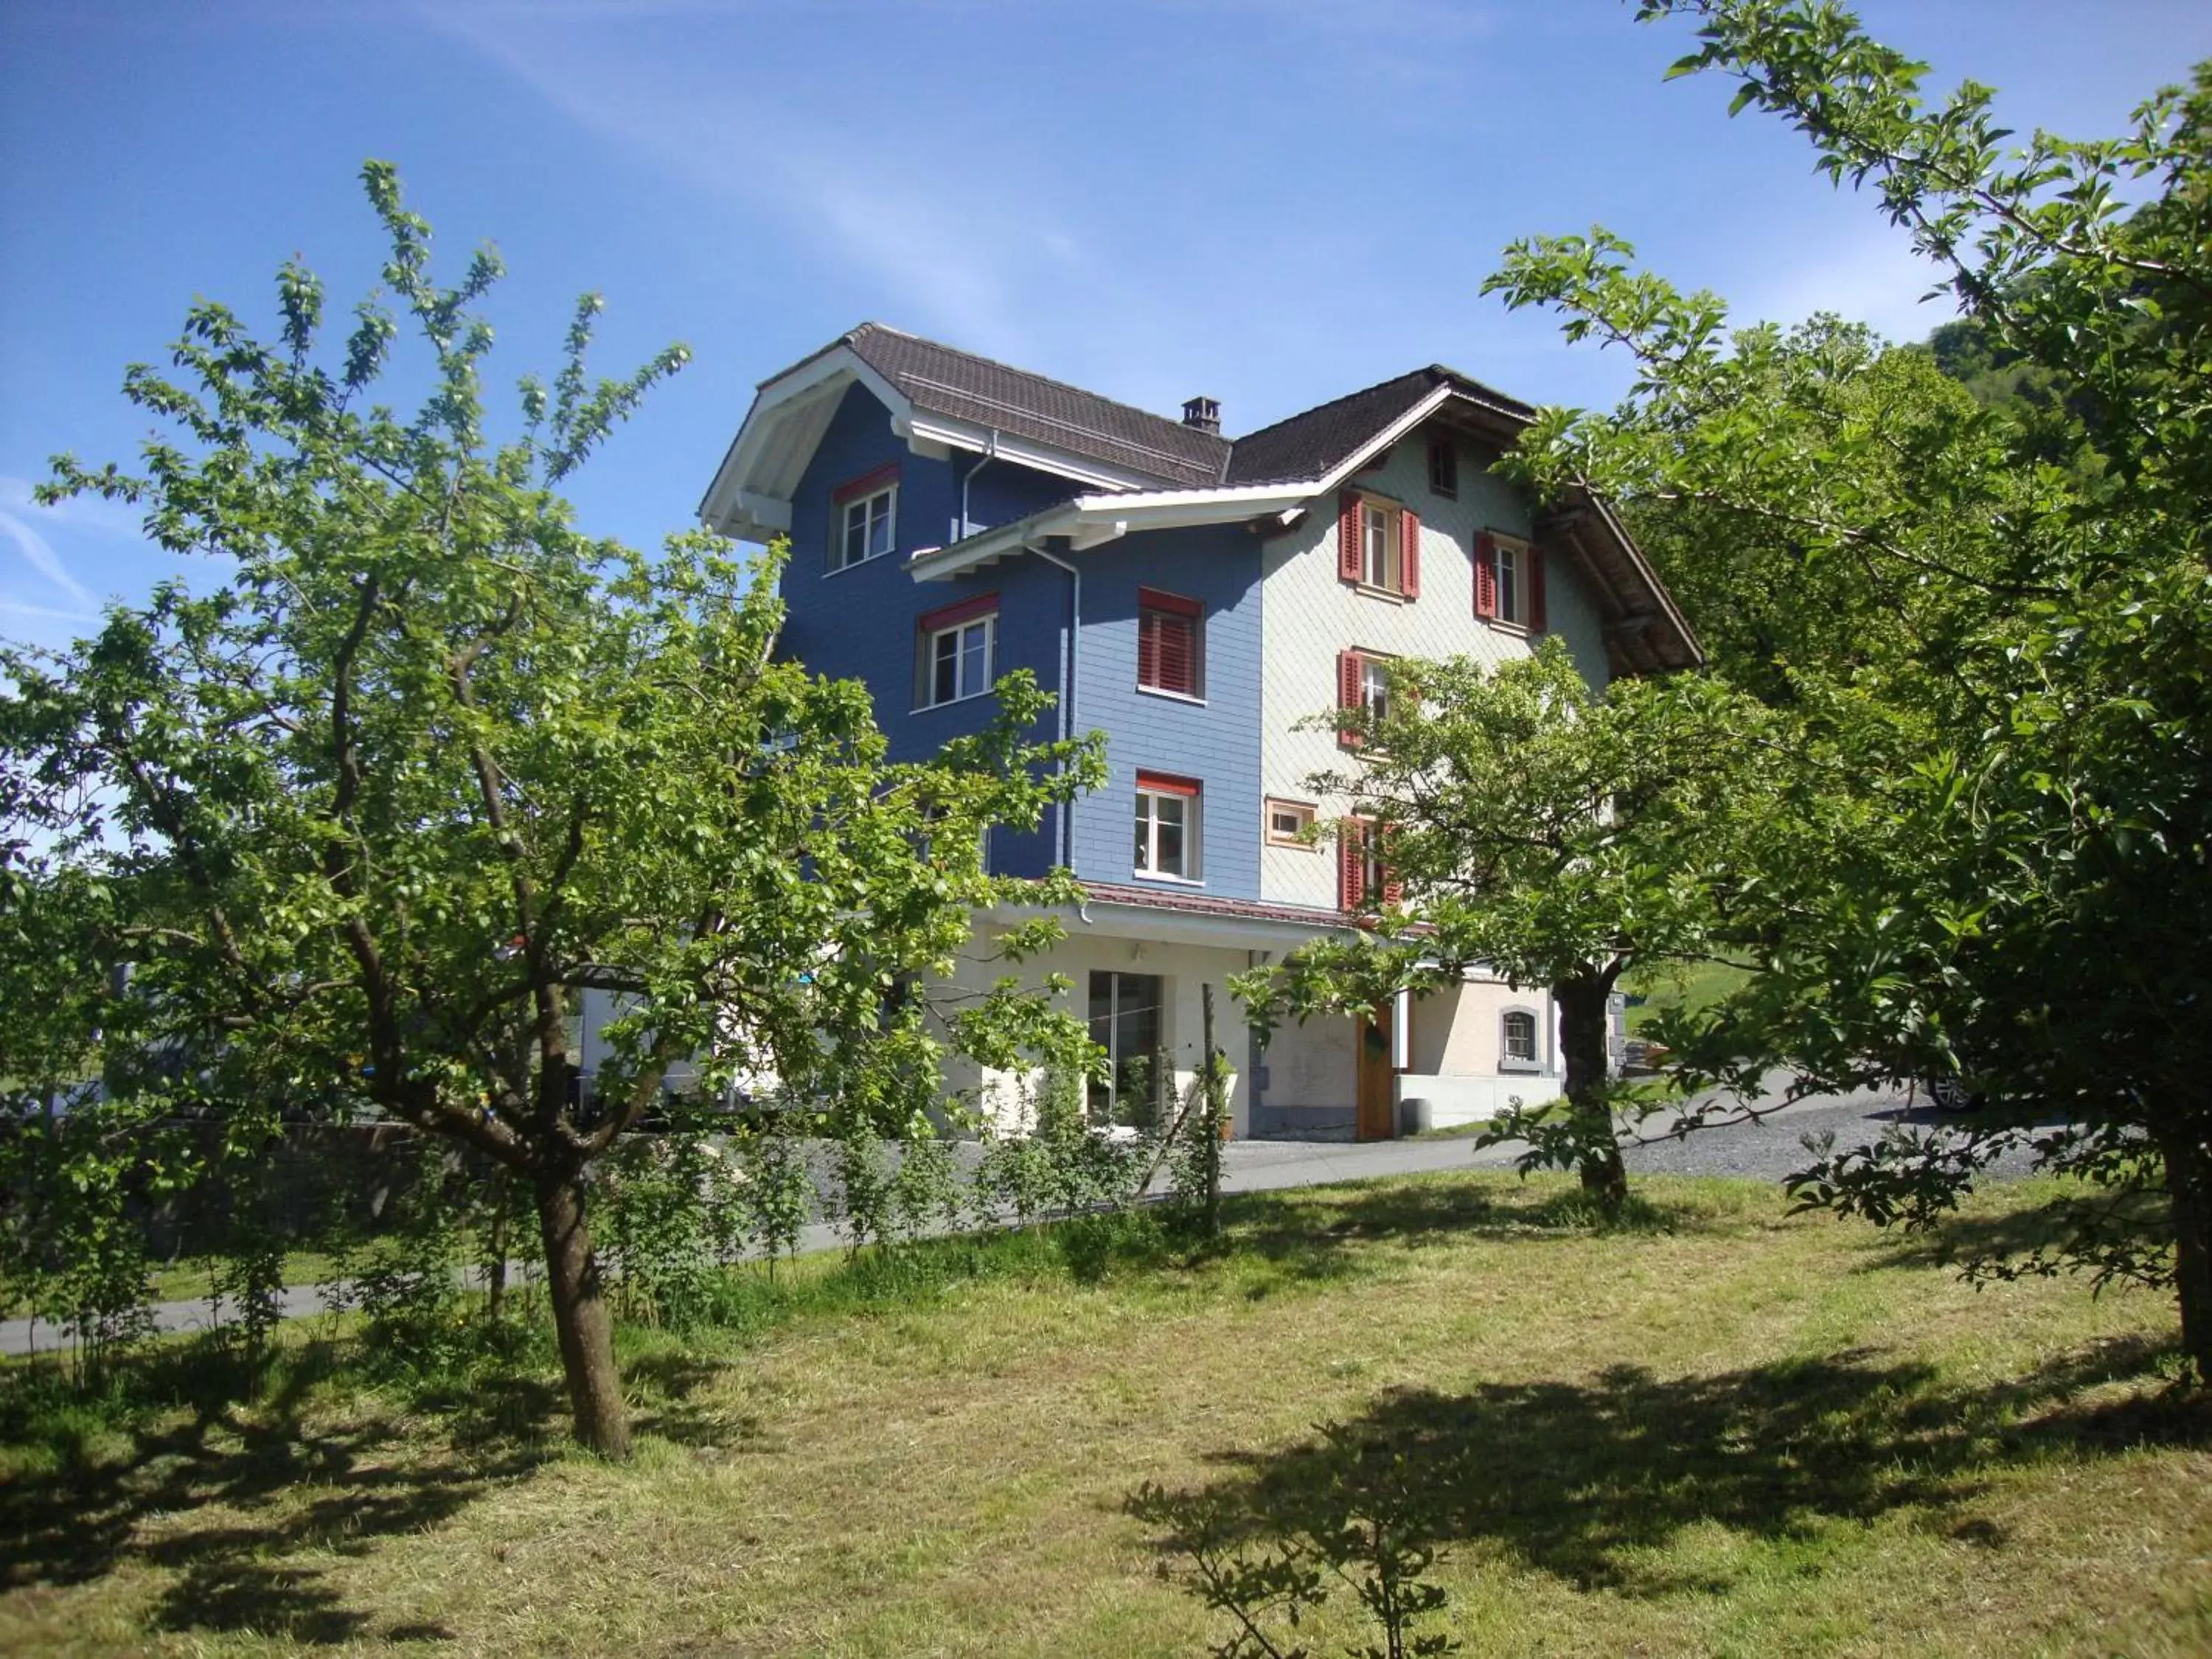 Property Building in Hirschfarm, Goldau